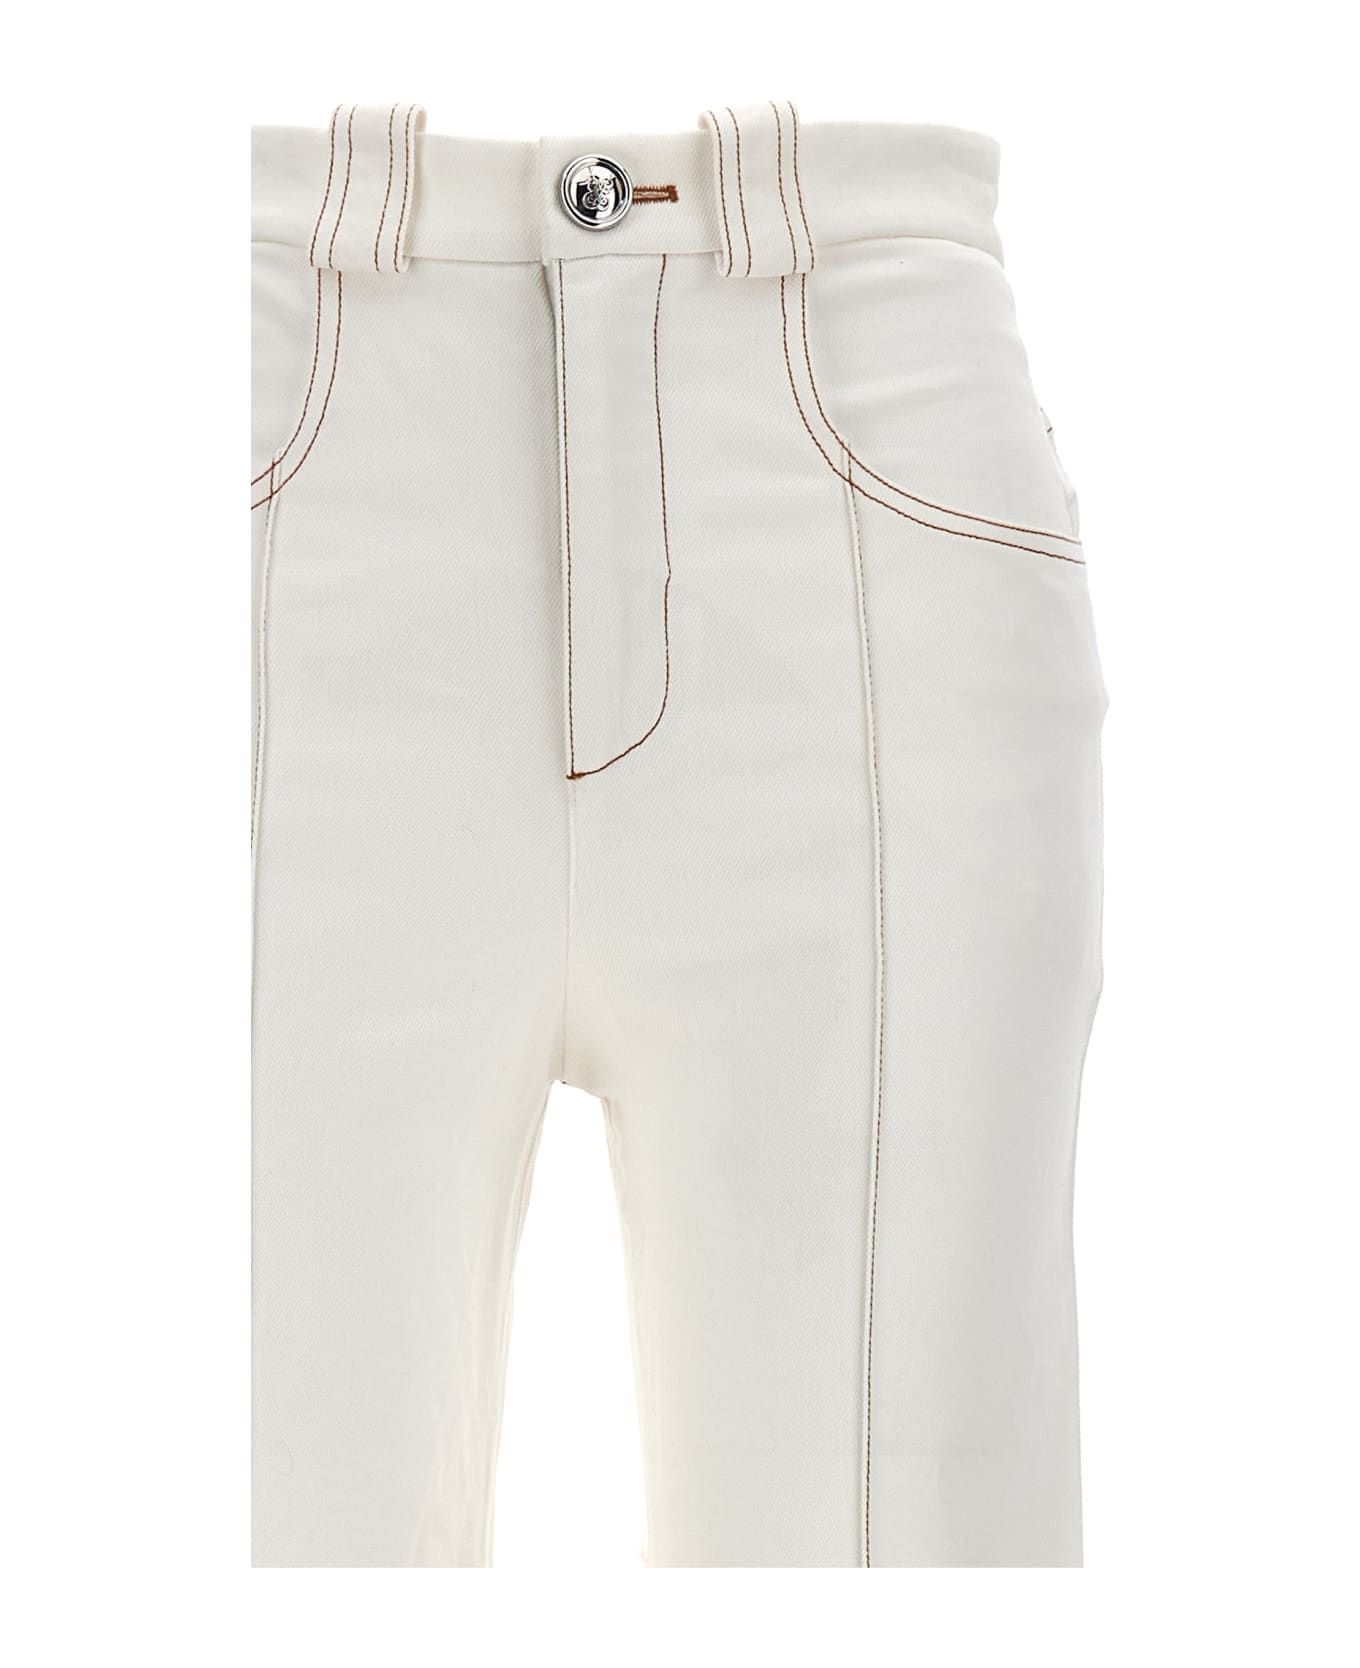 Giambattista Valli Feather Jeans - White